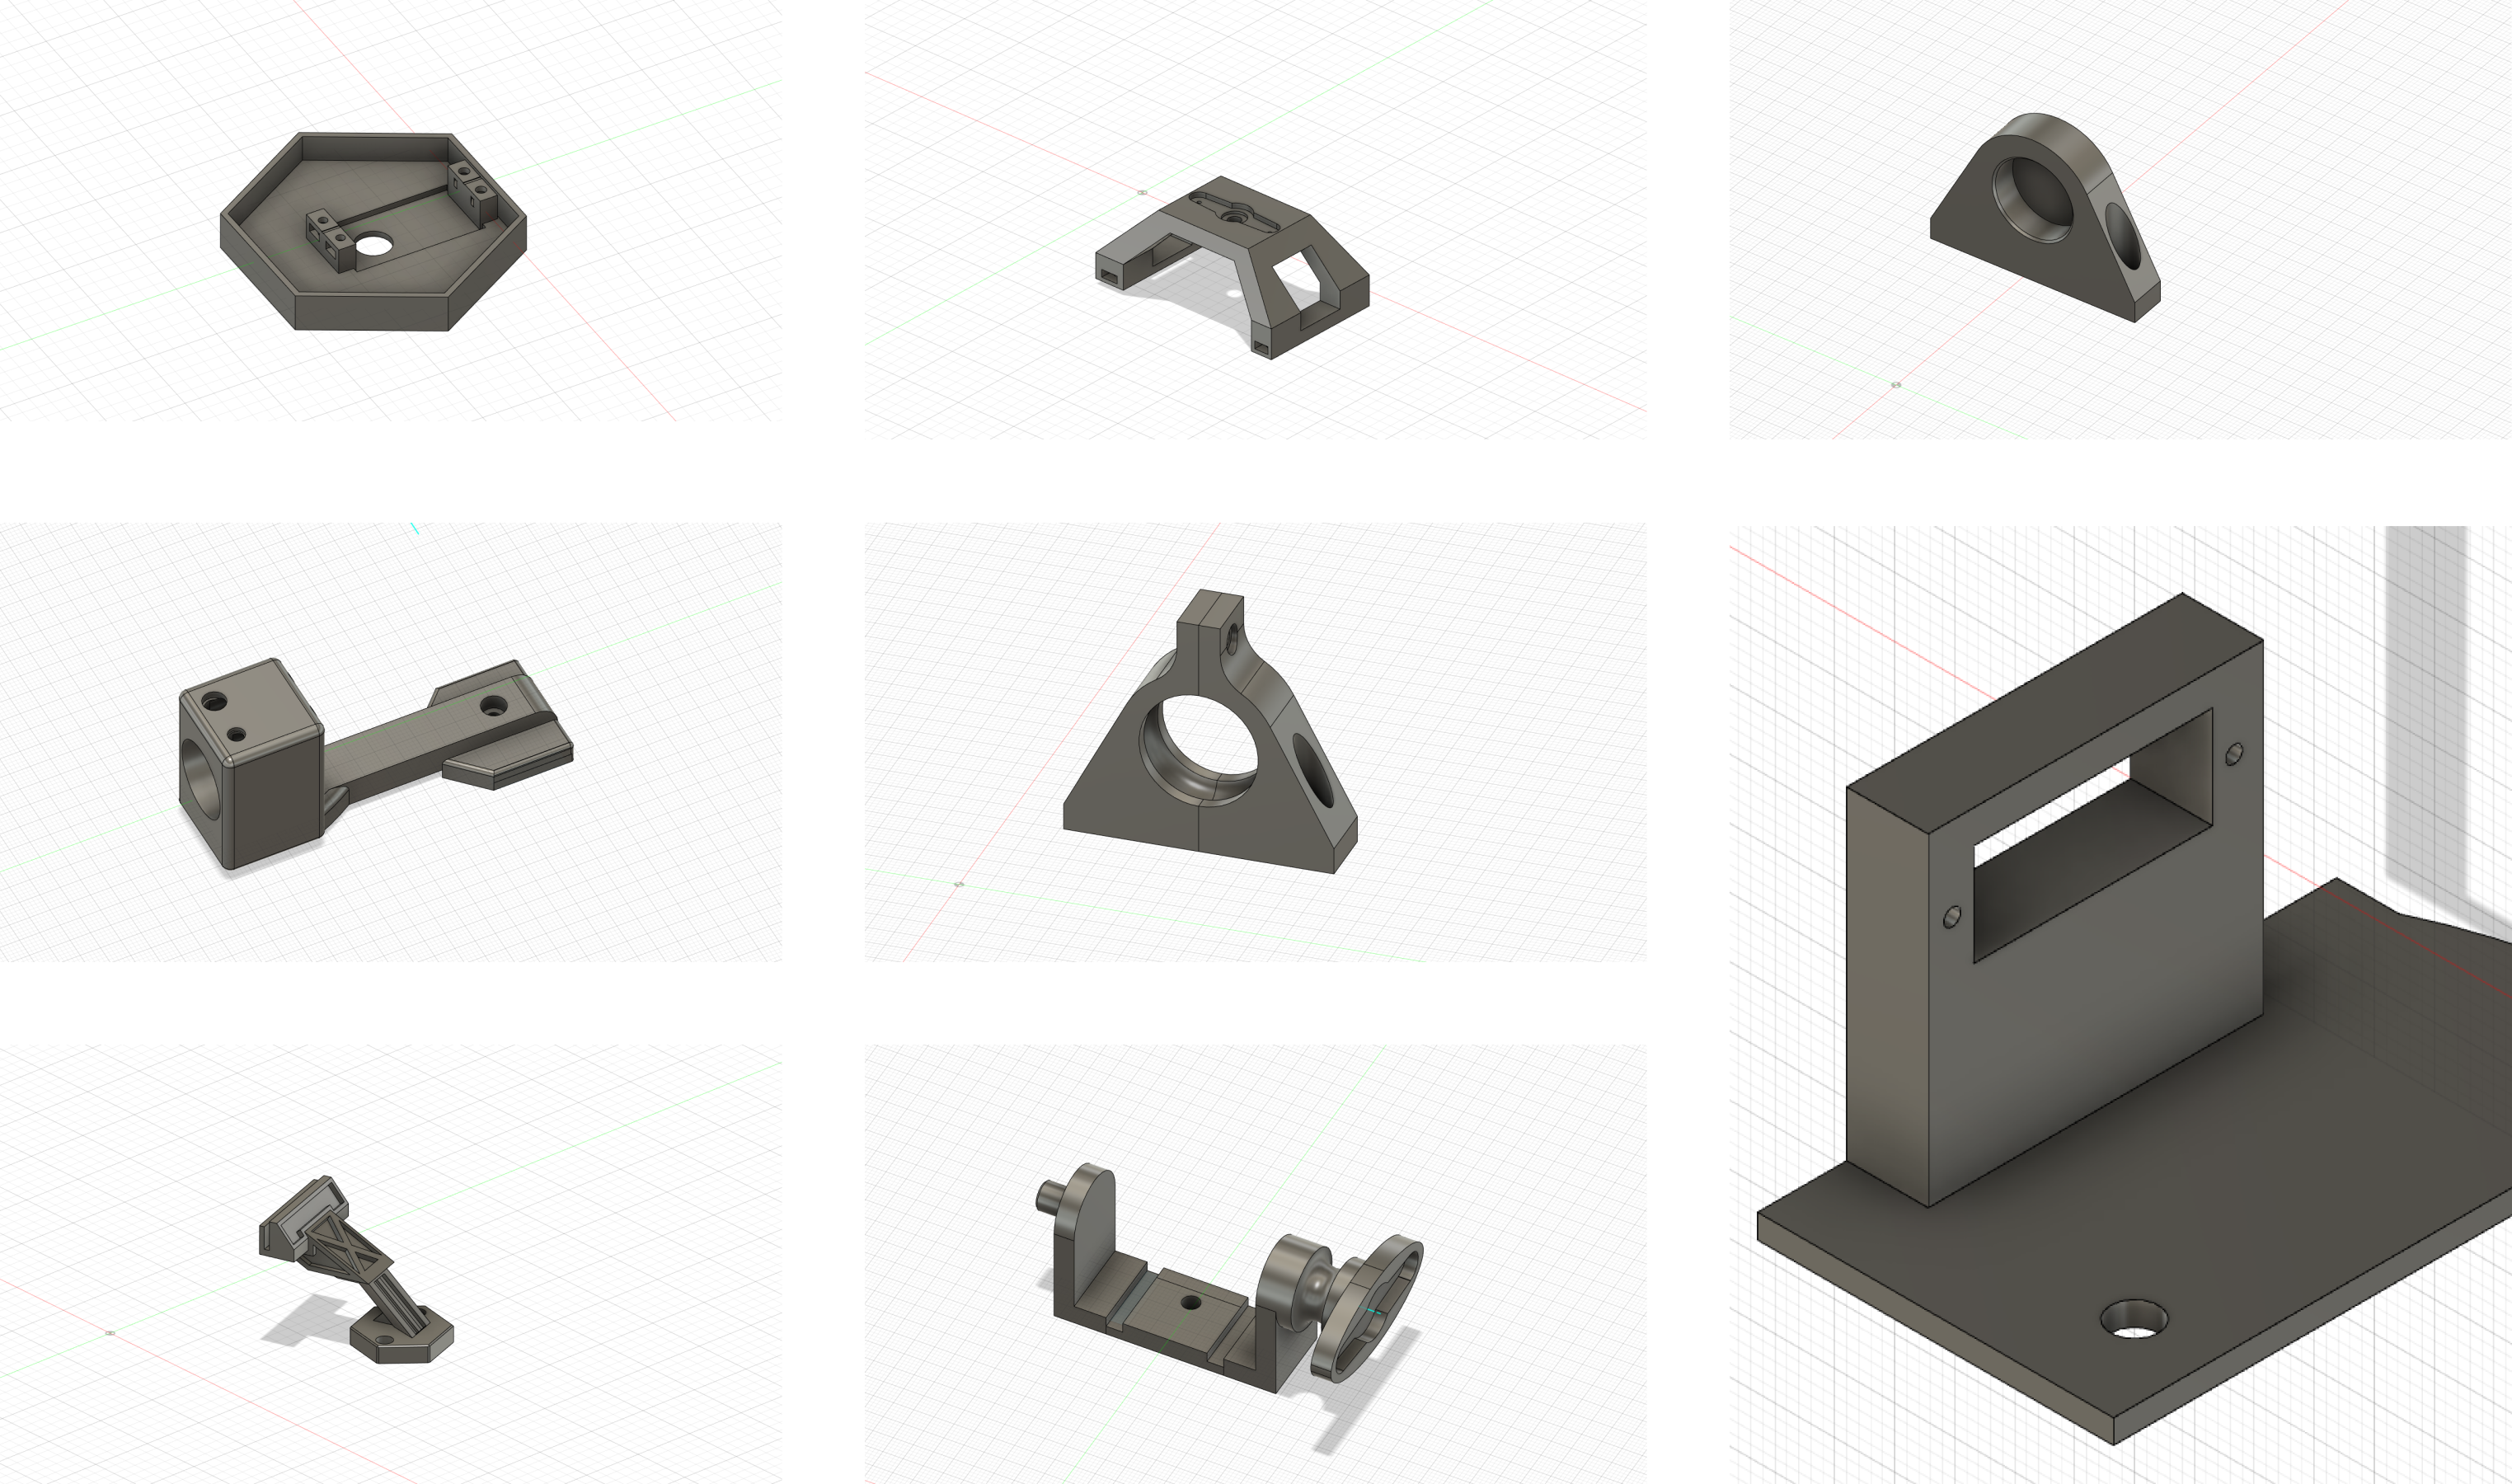 CAD models of all turret parts